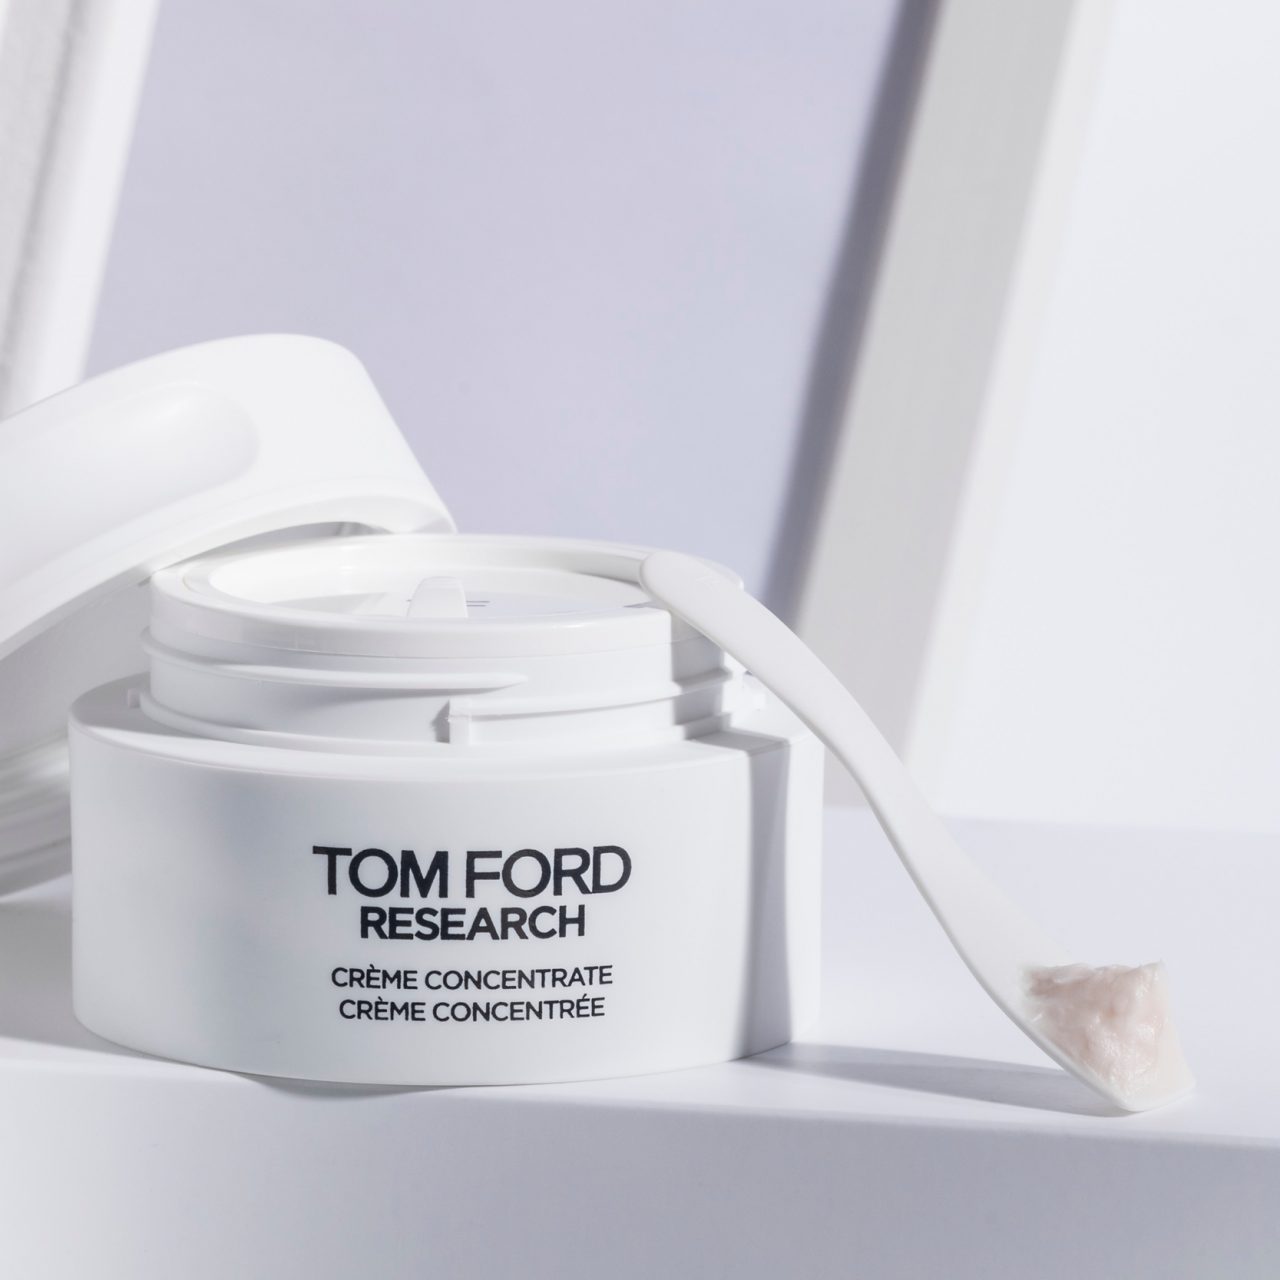 Tom Ford Beauty 首次進軍護膚領域創製以科研優先的高端護膚品Tom Ford Research – Vogue Hong Kong